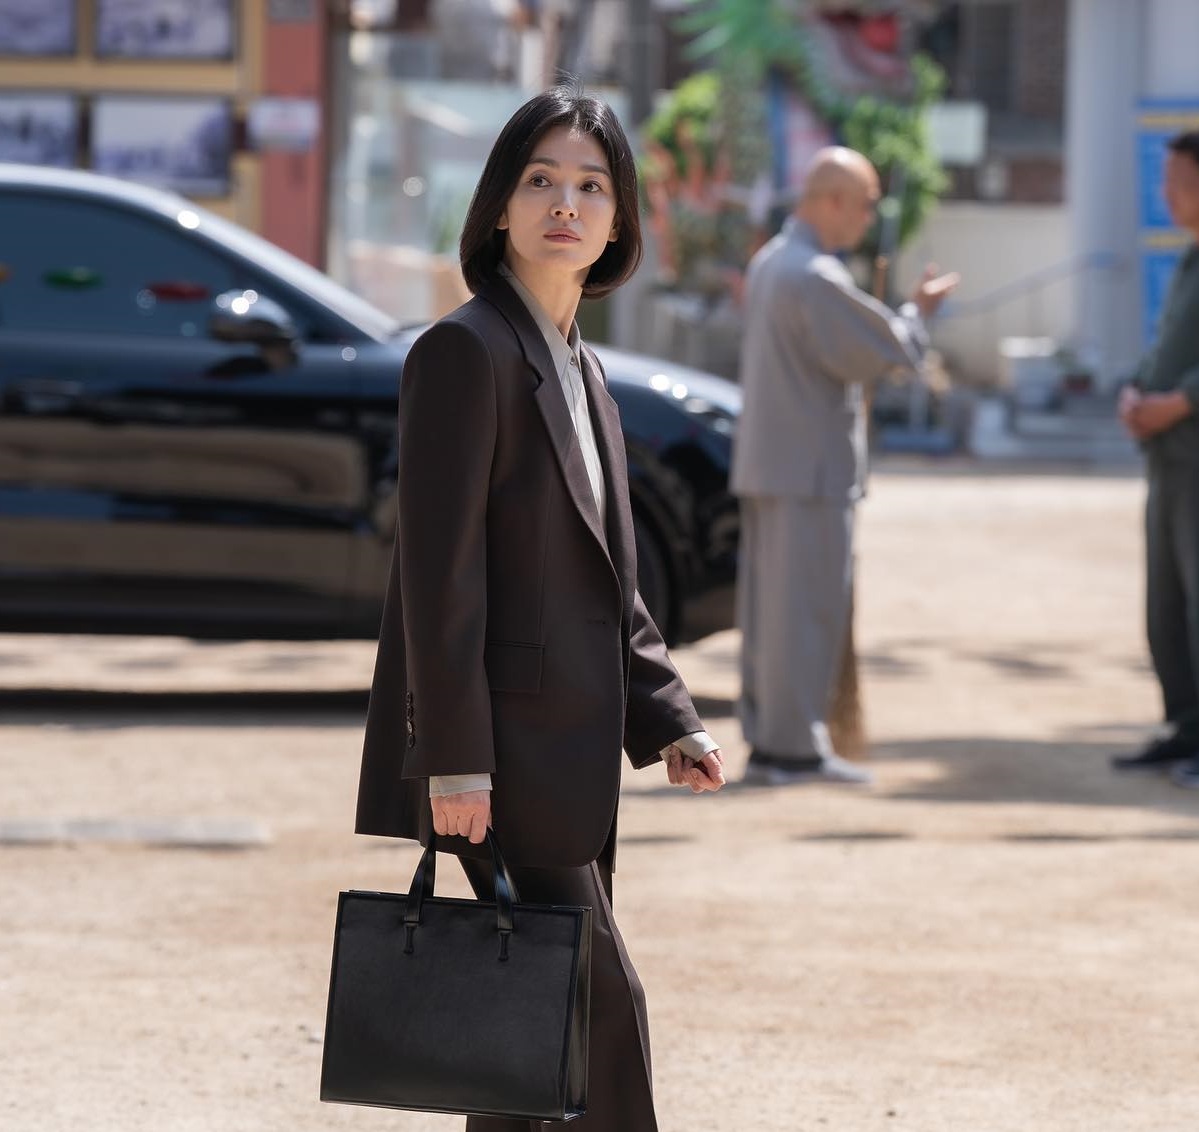 Song Hye Kyo mặc áo khoác đen: Đẹp và sang trong mọi hoàn cảnh - Ảnh 6.